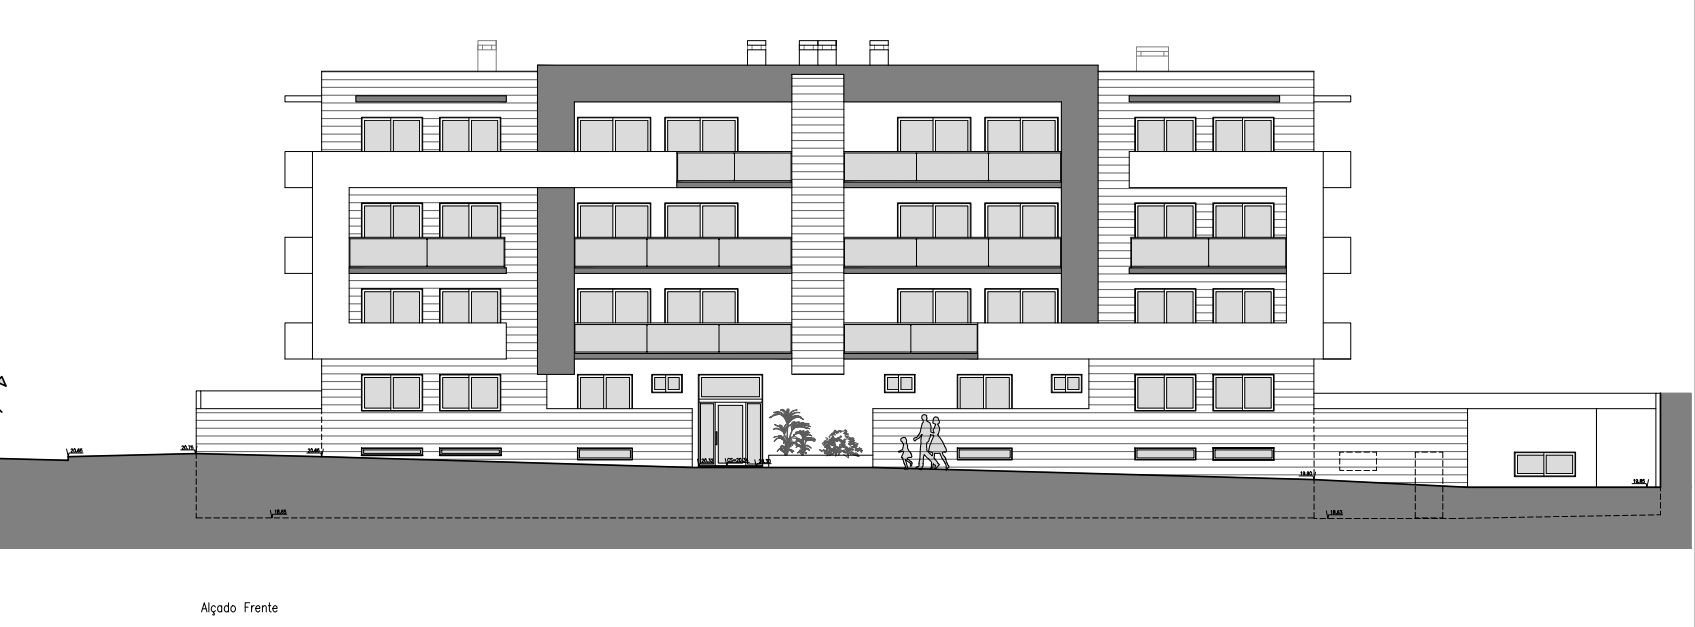 fachada edifício Hercules apartamentos novos para venda em Setúbal